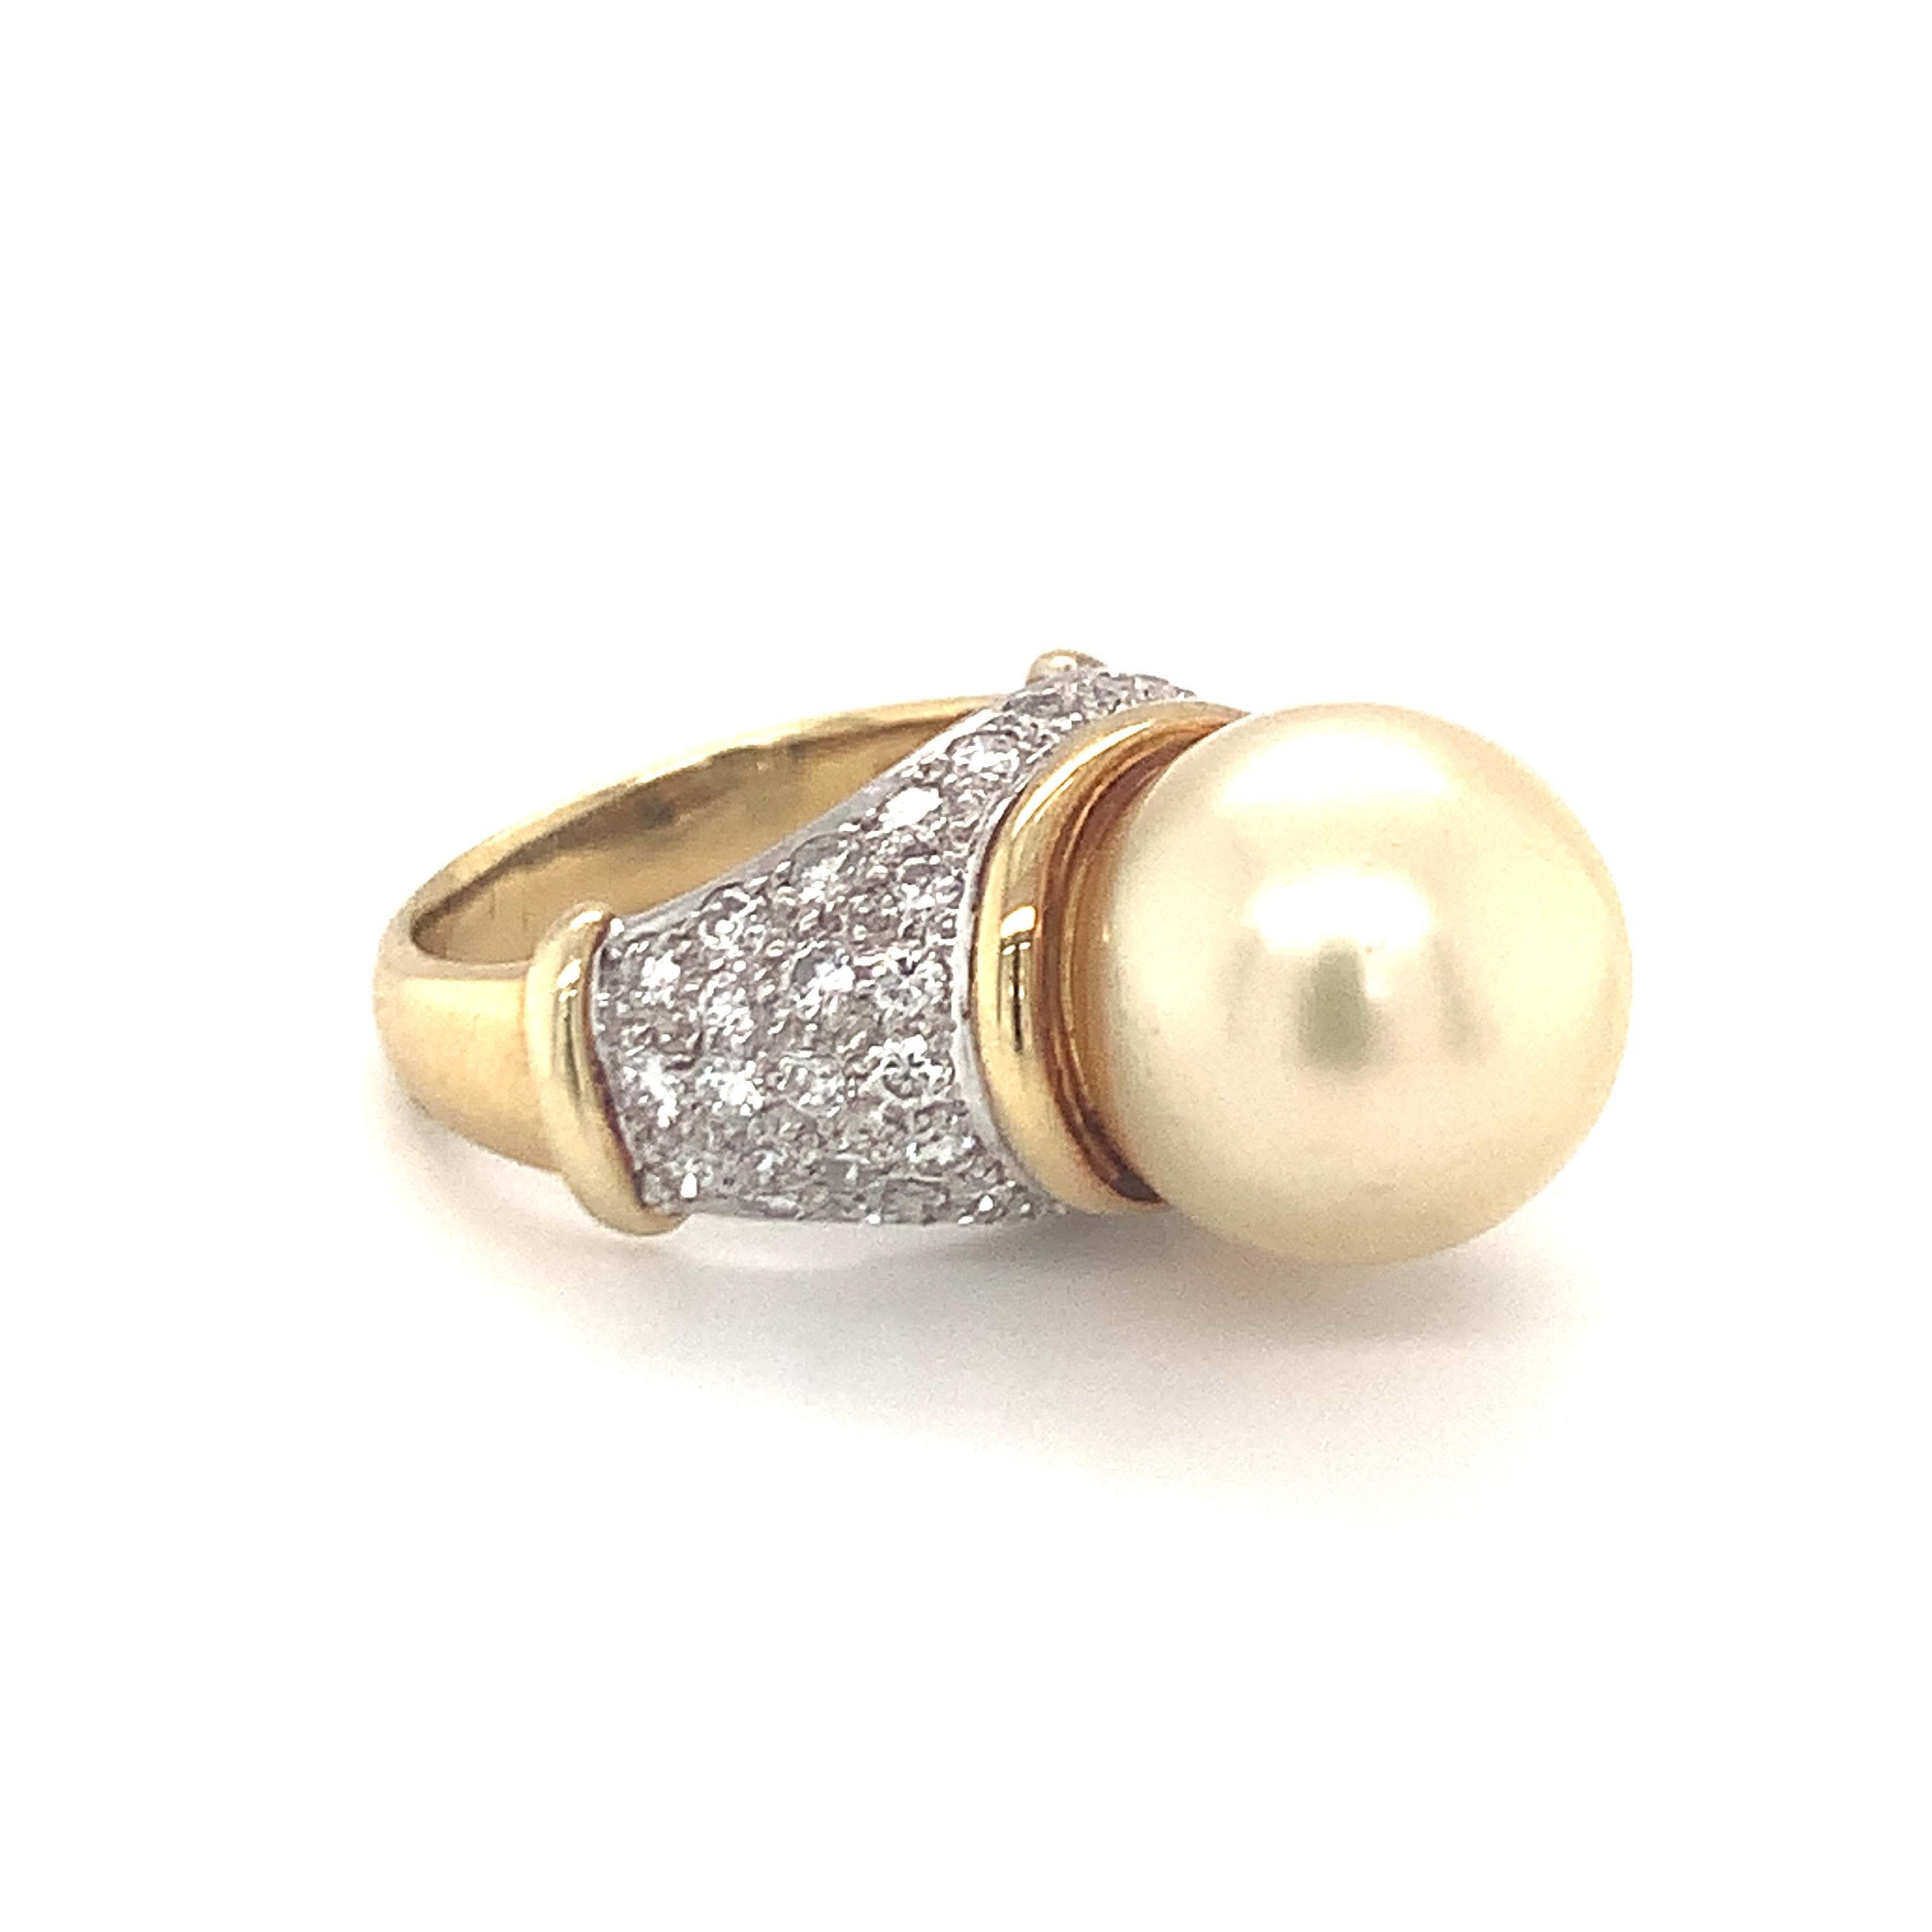 Bague en or jaune 18 carats, perles et diamants, ornée d'une perle ronde dorée des mers du Sud mesurant 13 millimètres de diamètre. Le tout est rehaussé par cinquante diamants ronds de taille brillant totalisant 1,50 ct. de couleur G et de pureté